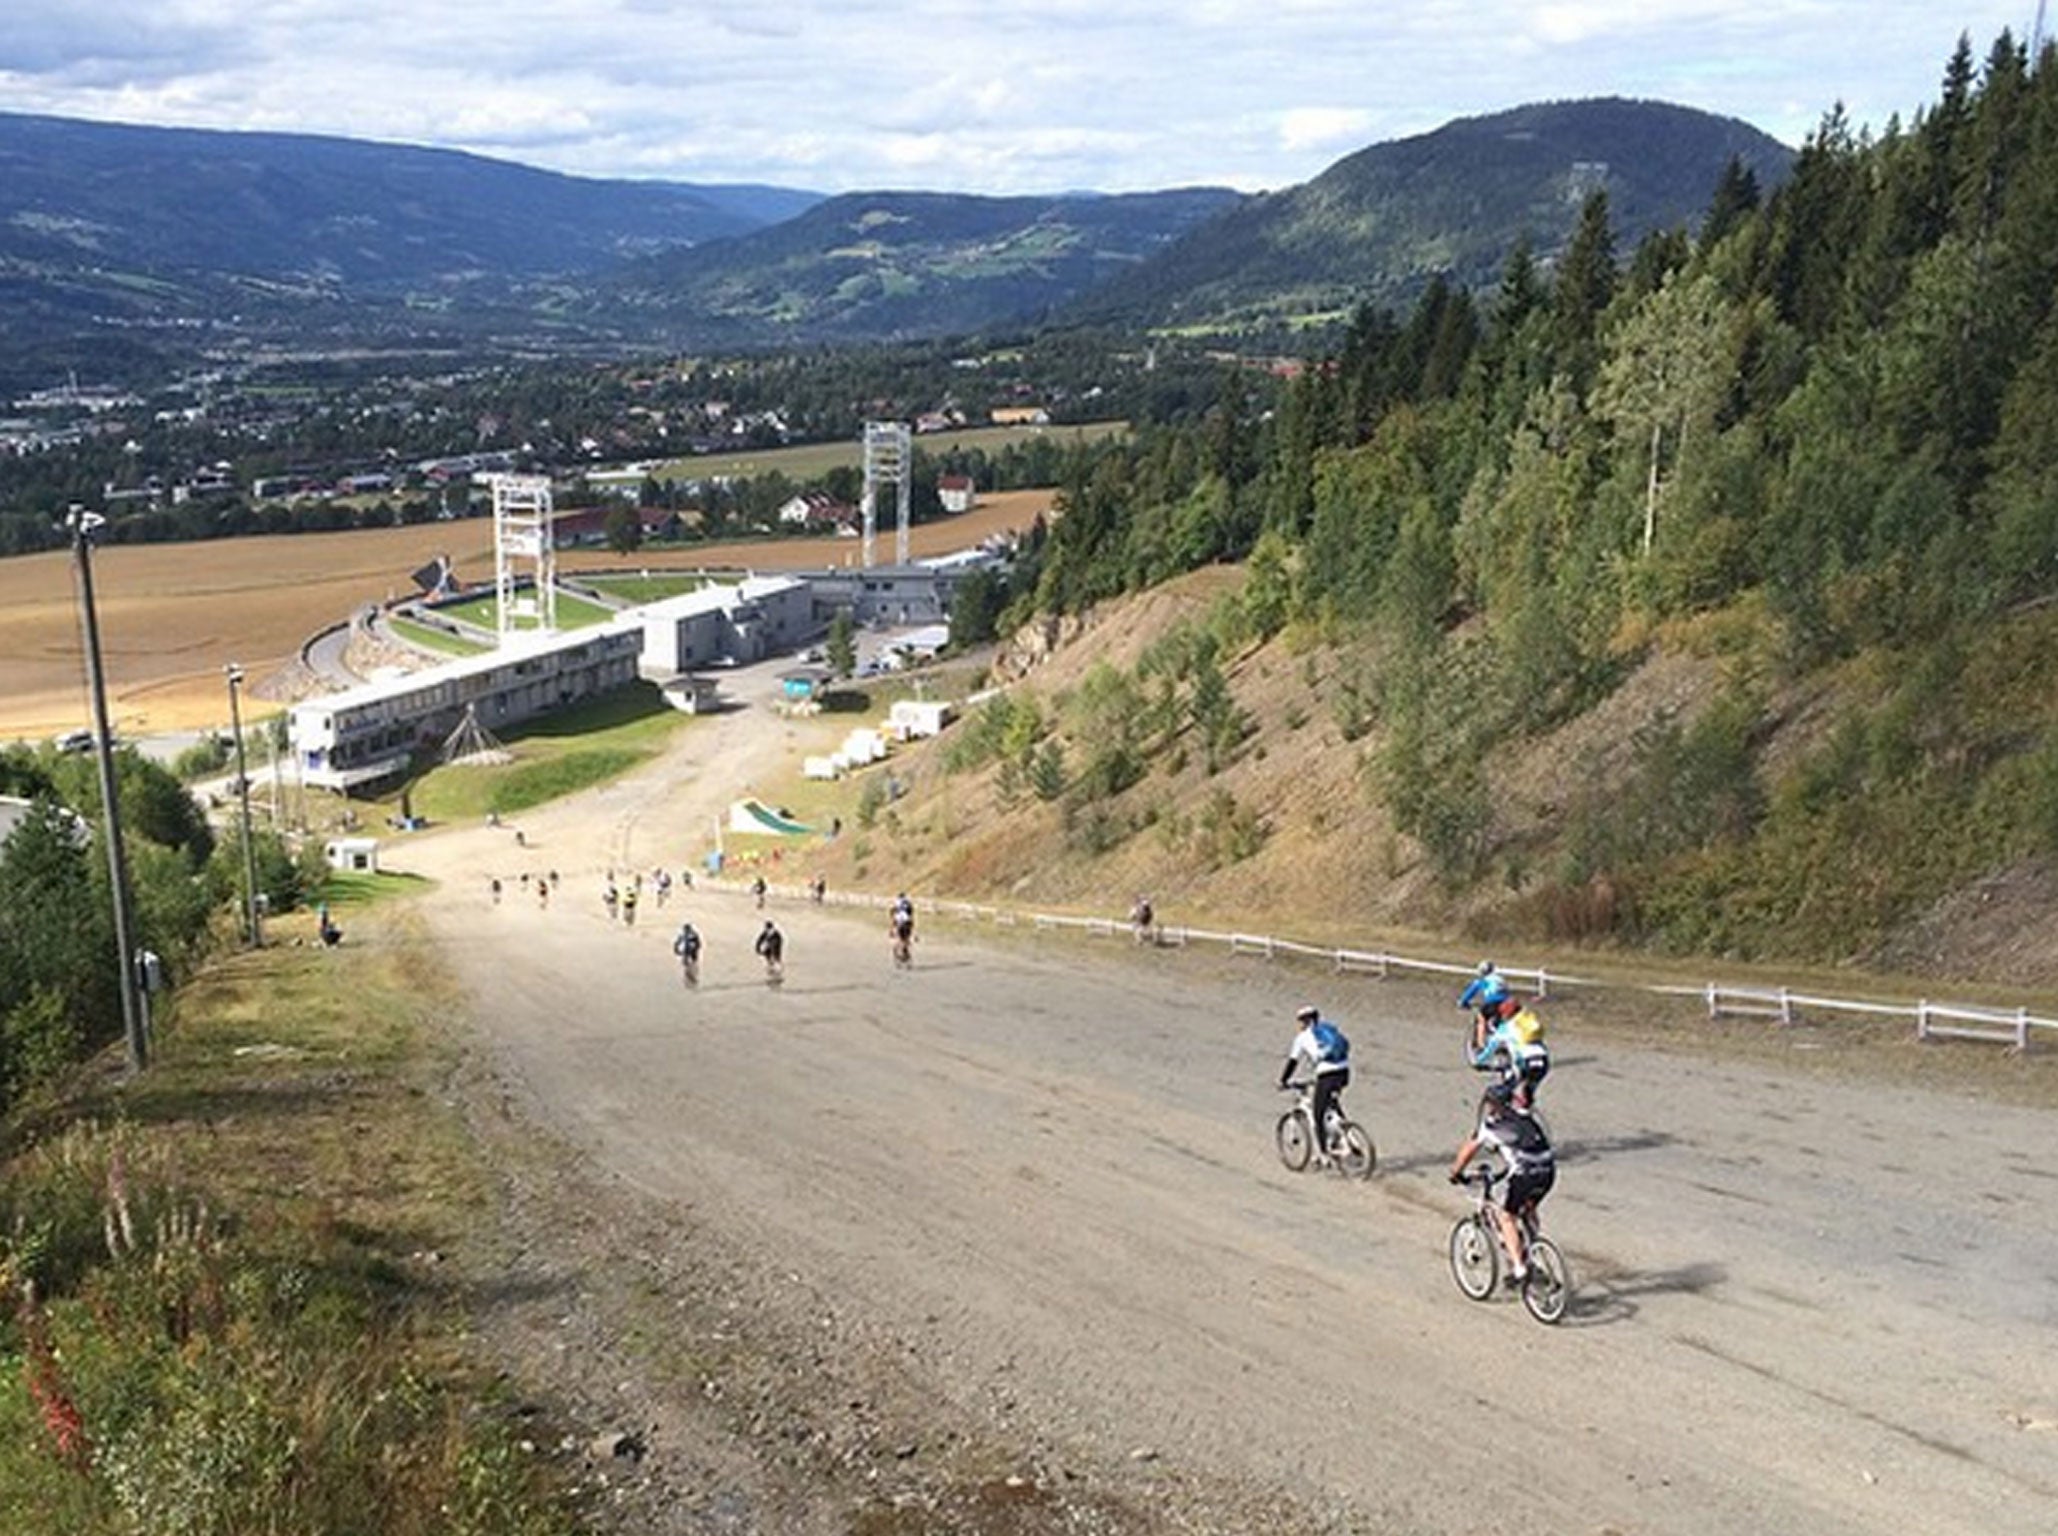 The Fredagsbirken biking event in Norway